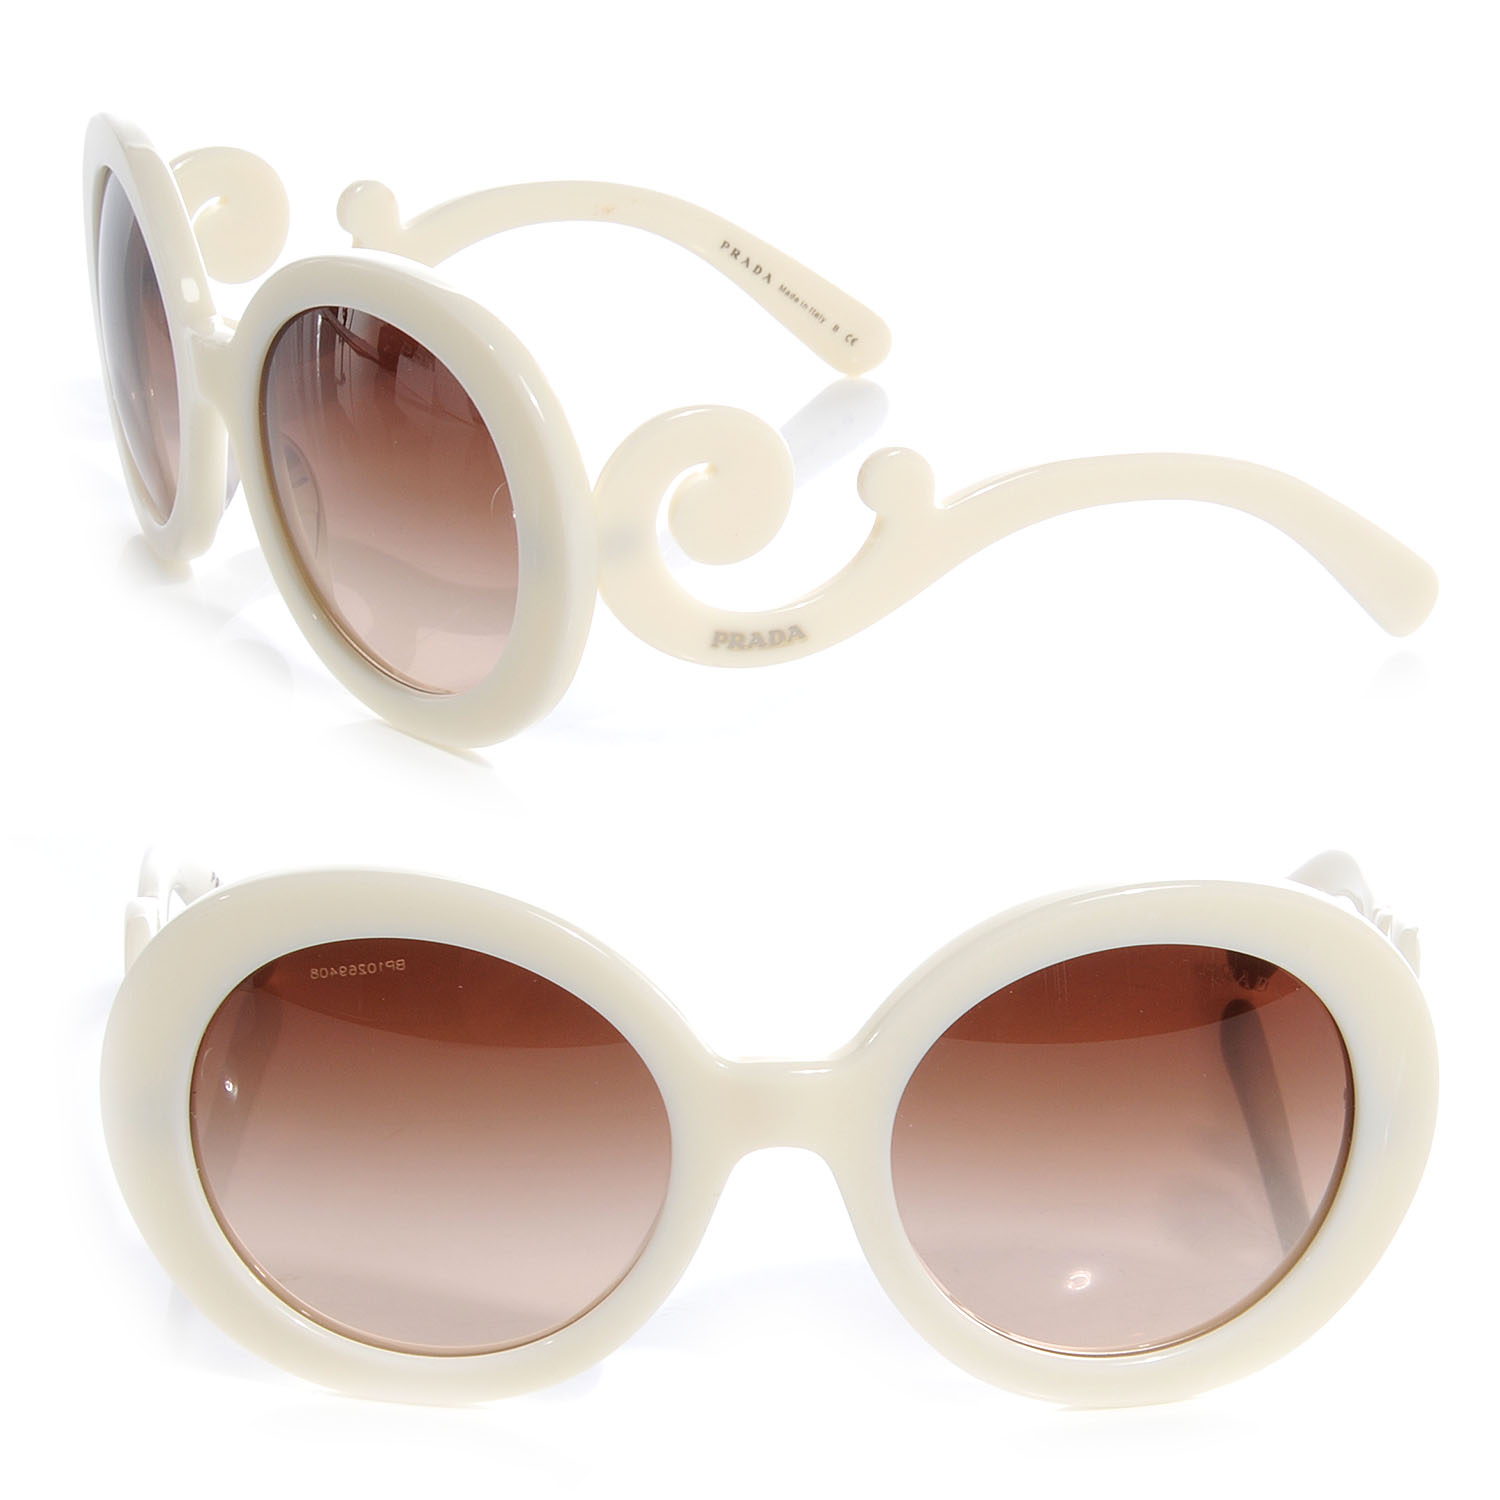 prada sunglasses white frame